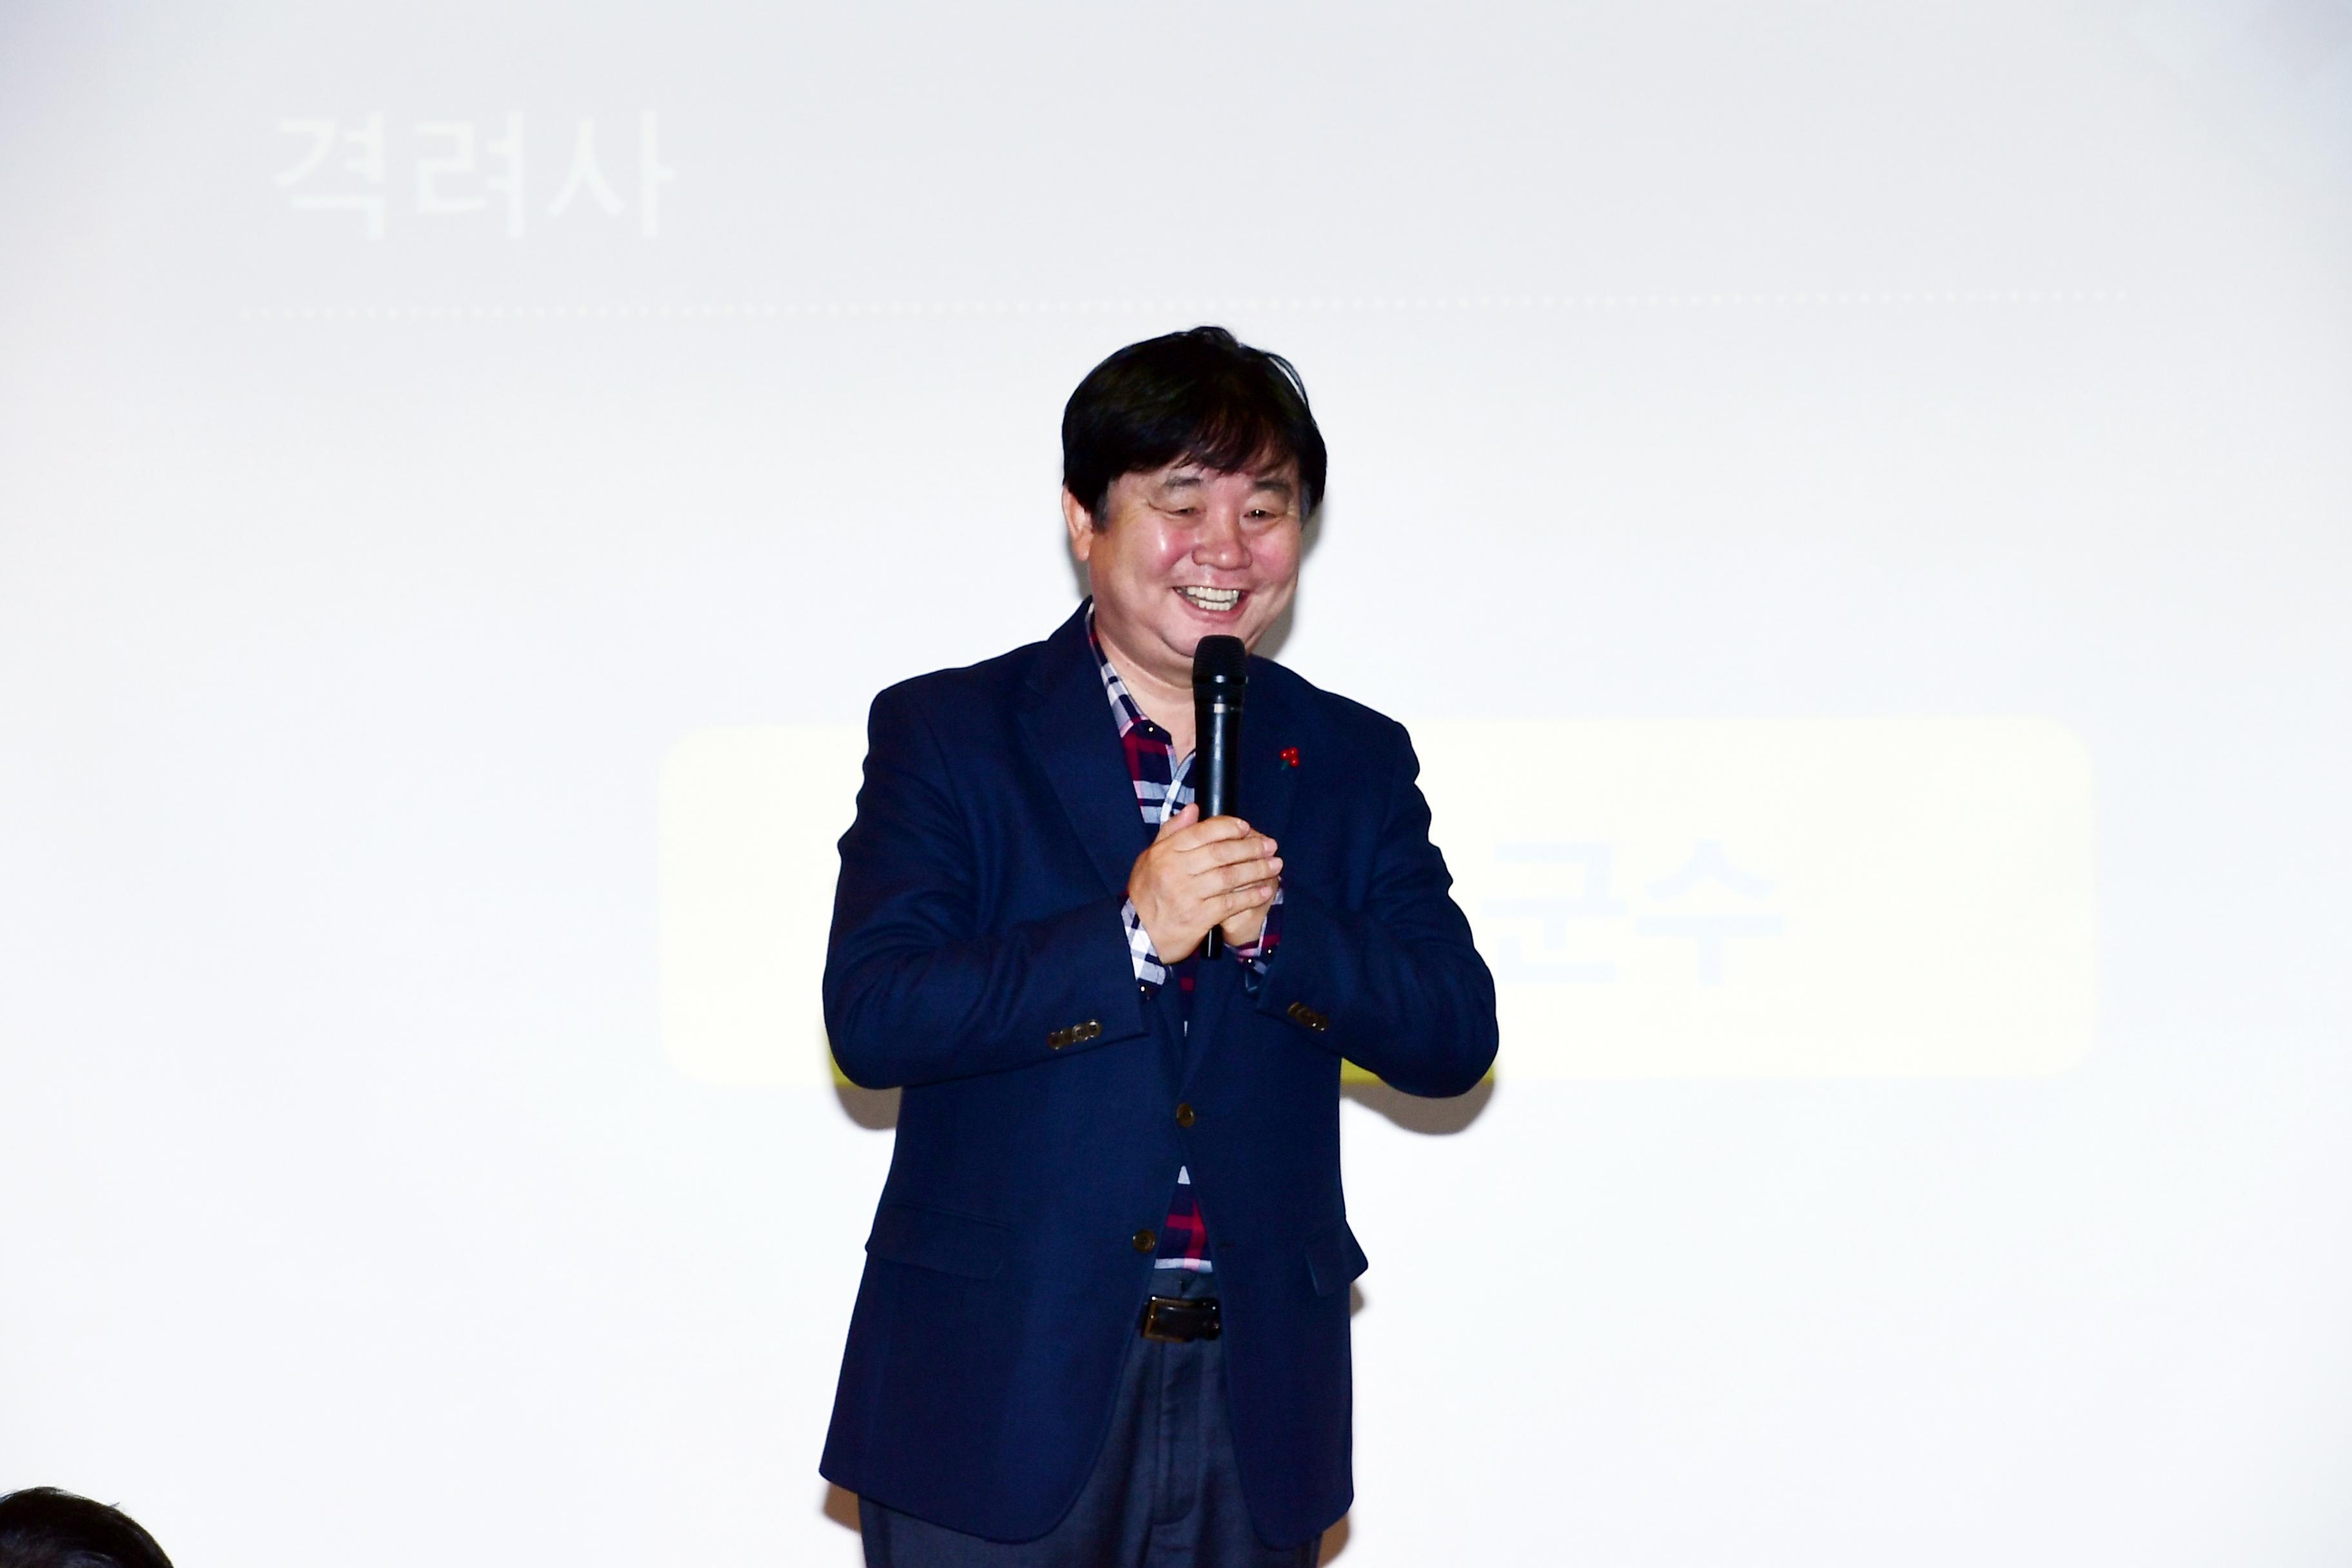 2019 성인문예교육 간동노인대학 개강식 의 사진